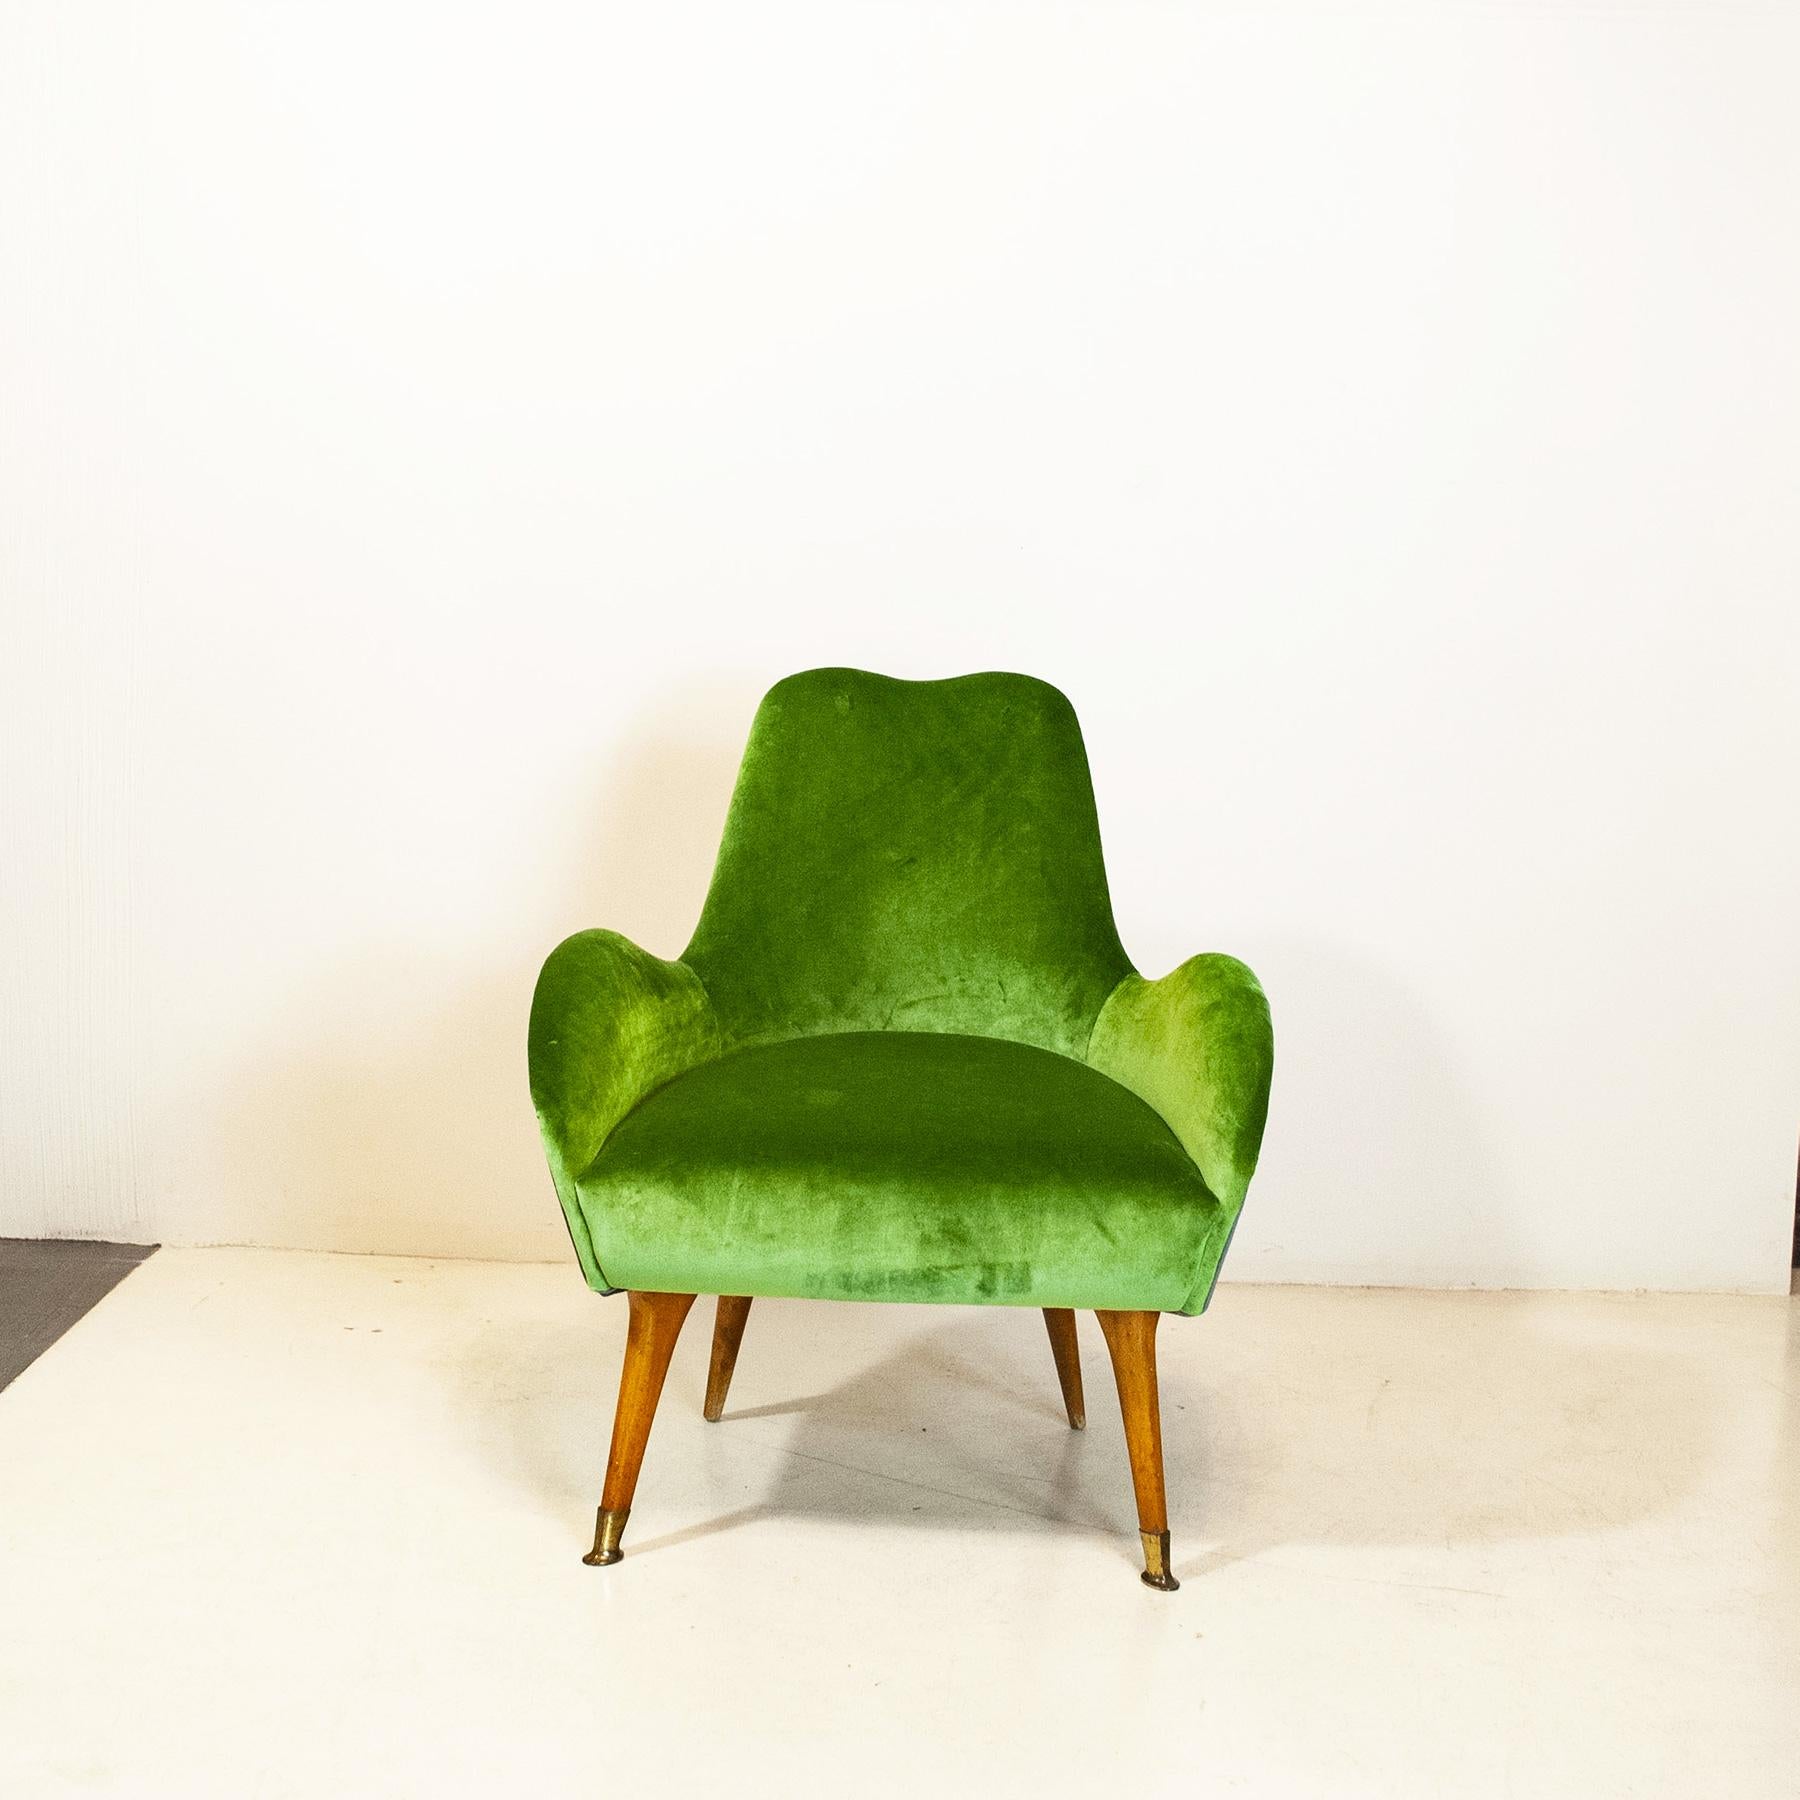 Single armchair, Italian production, mid-50s.